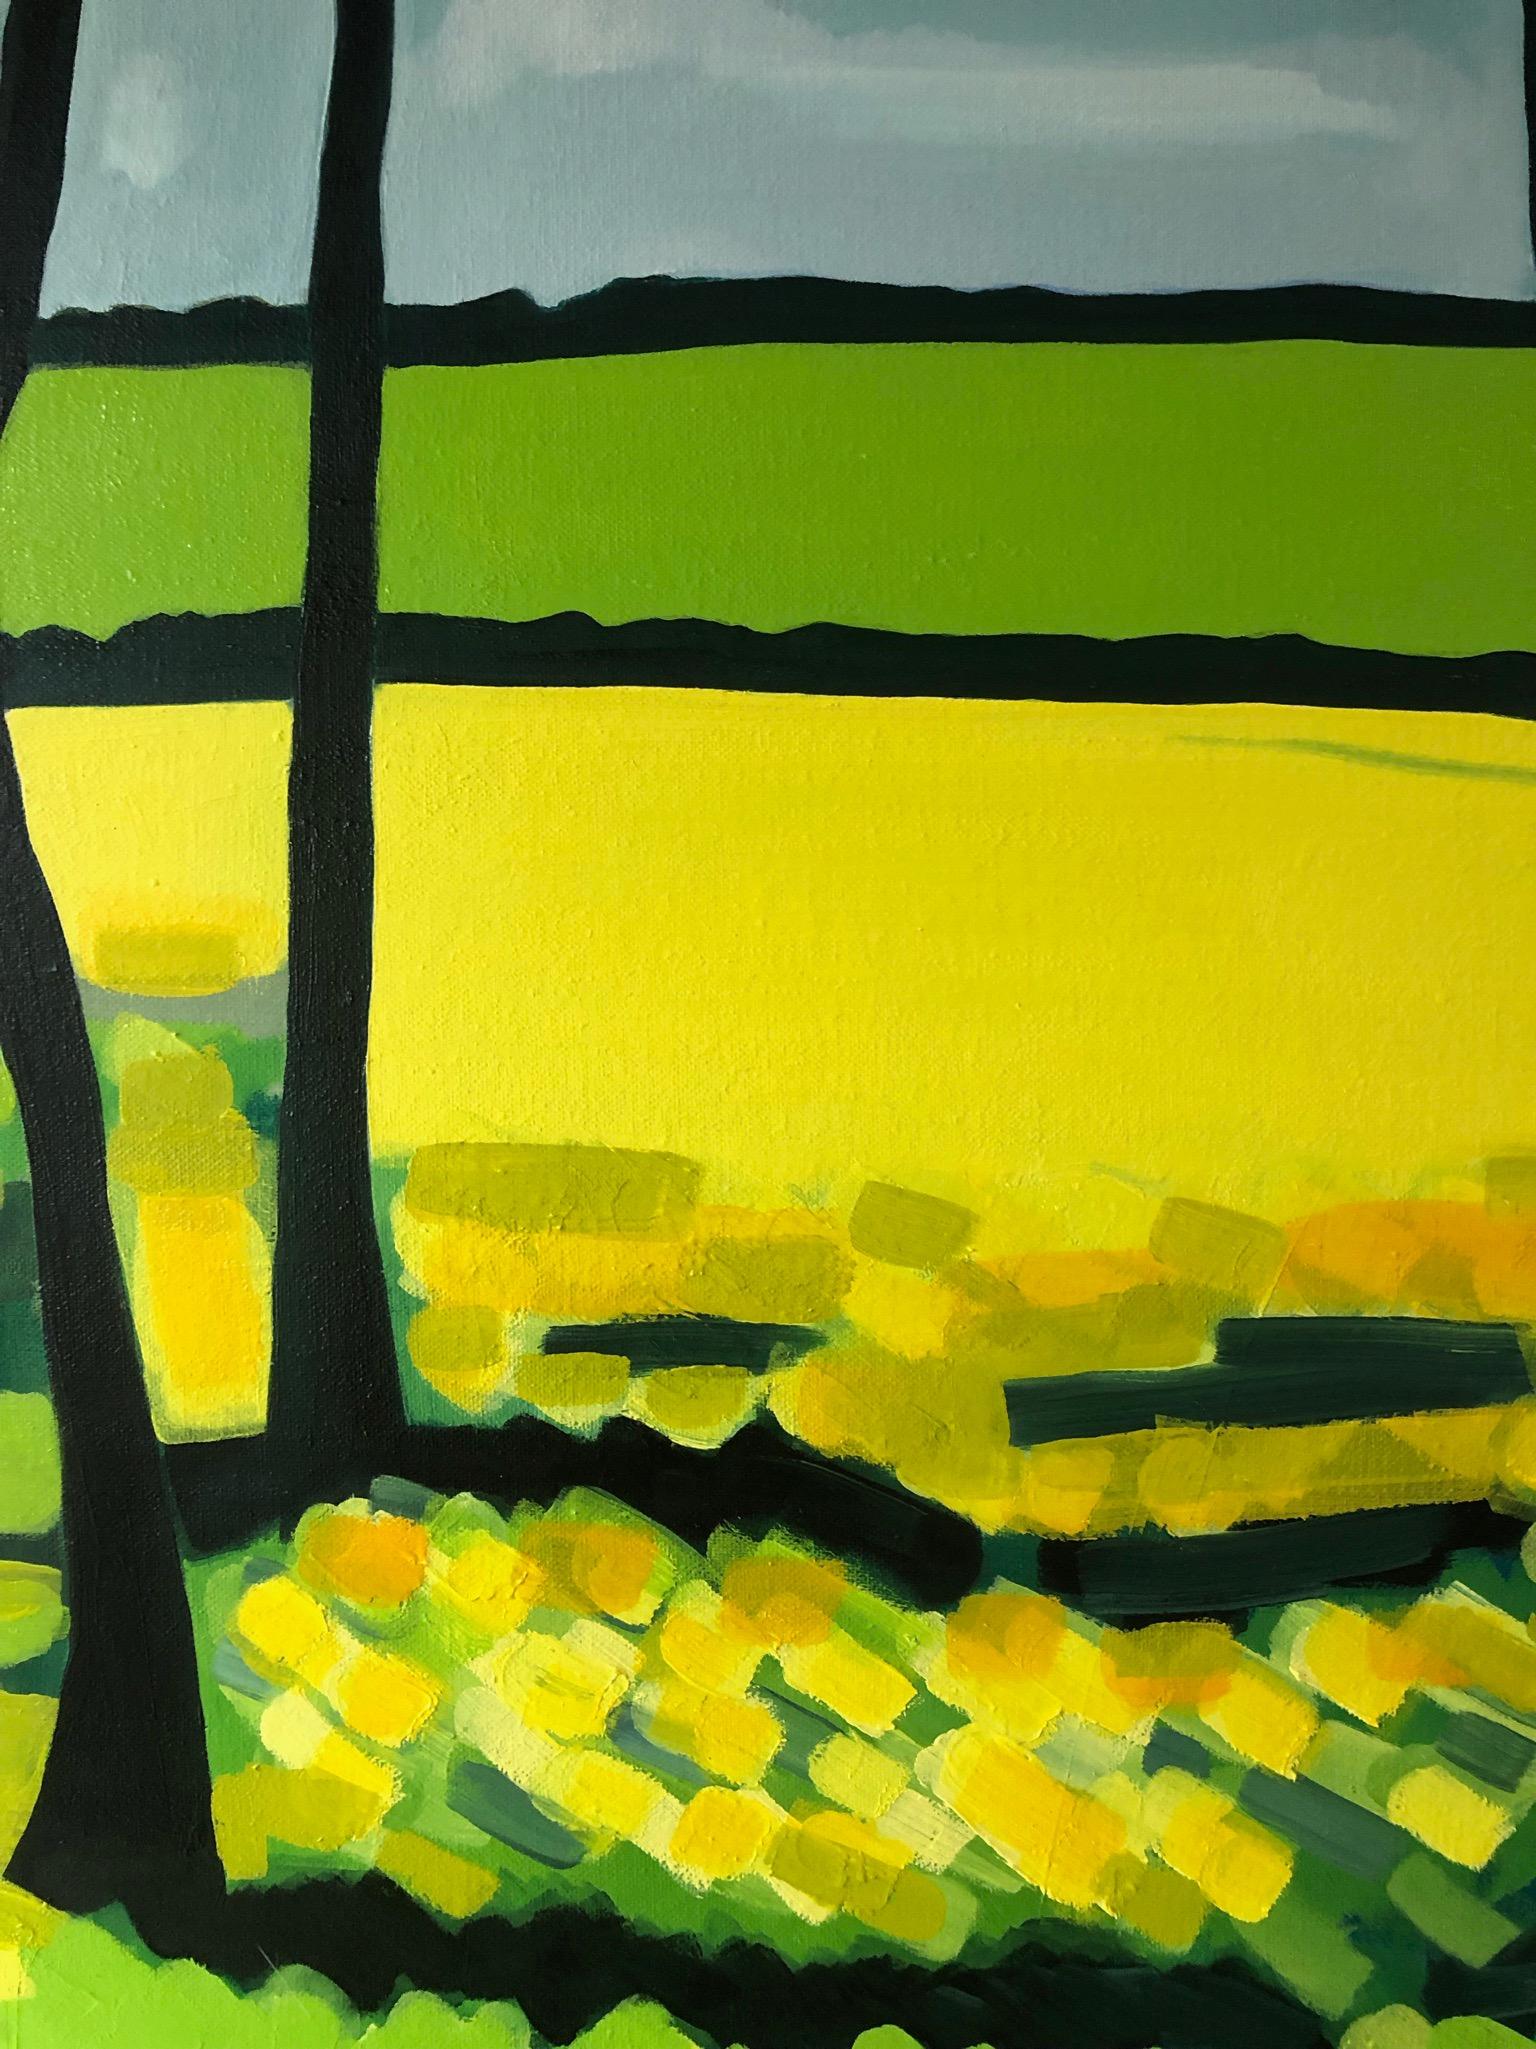 Yellow Fields no.3 est une peinture à l'huile originale de l'artiste Alexa Roscoe. Dans cette peinture audacieuse et vibrante. Alexa a capturé la profondeur de vue des champs encadrés par les lignes sombres des arbres. Les arbres en forme de